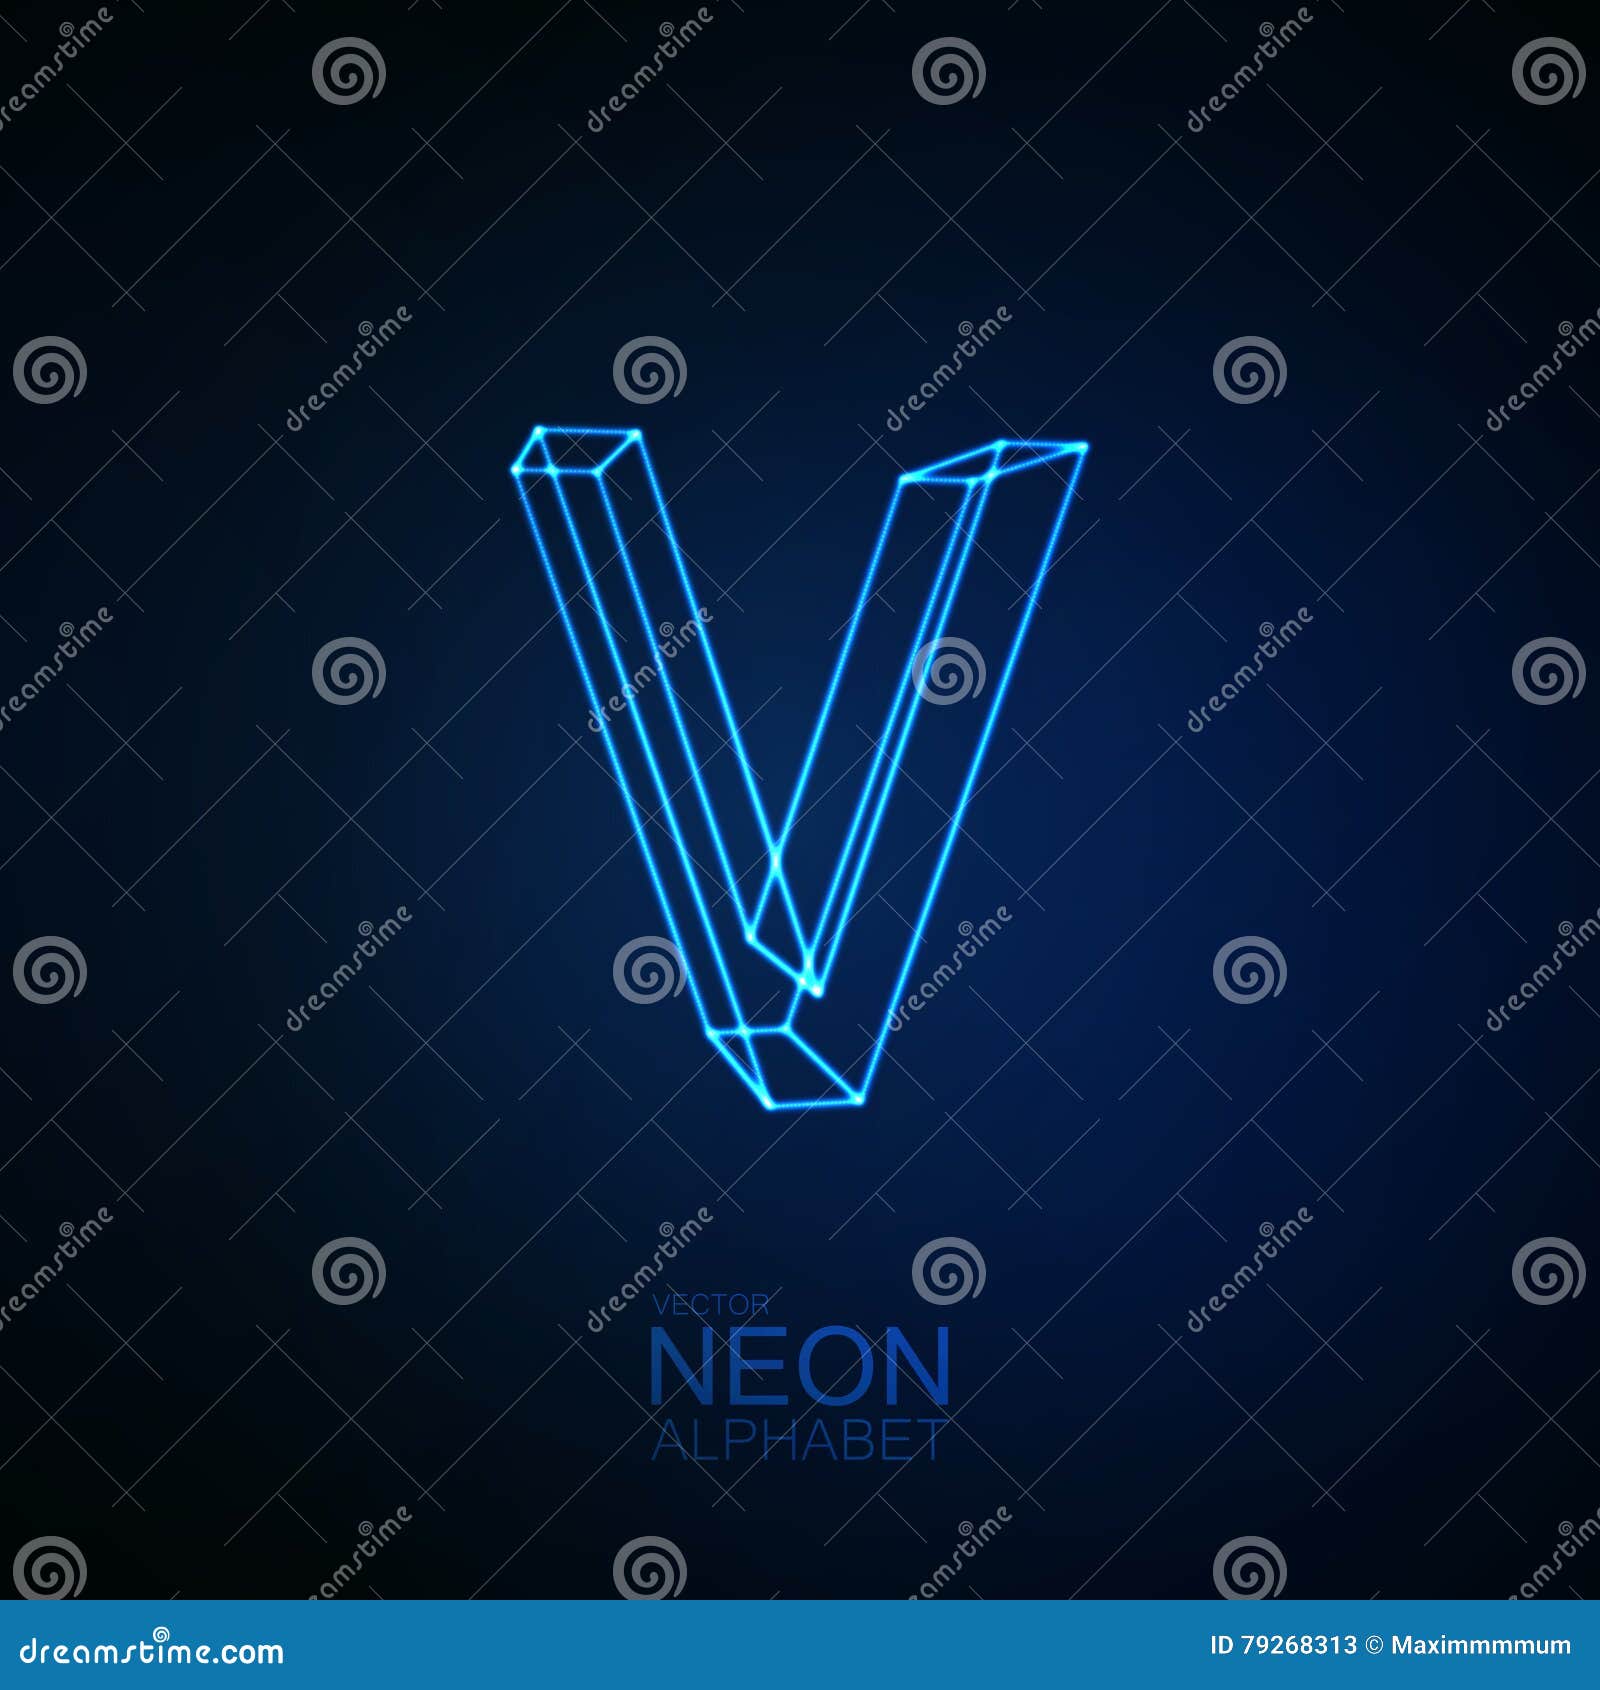 Neon 3d Letter V Stock Vector Illustration Of Light